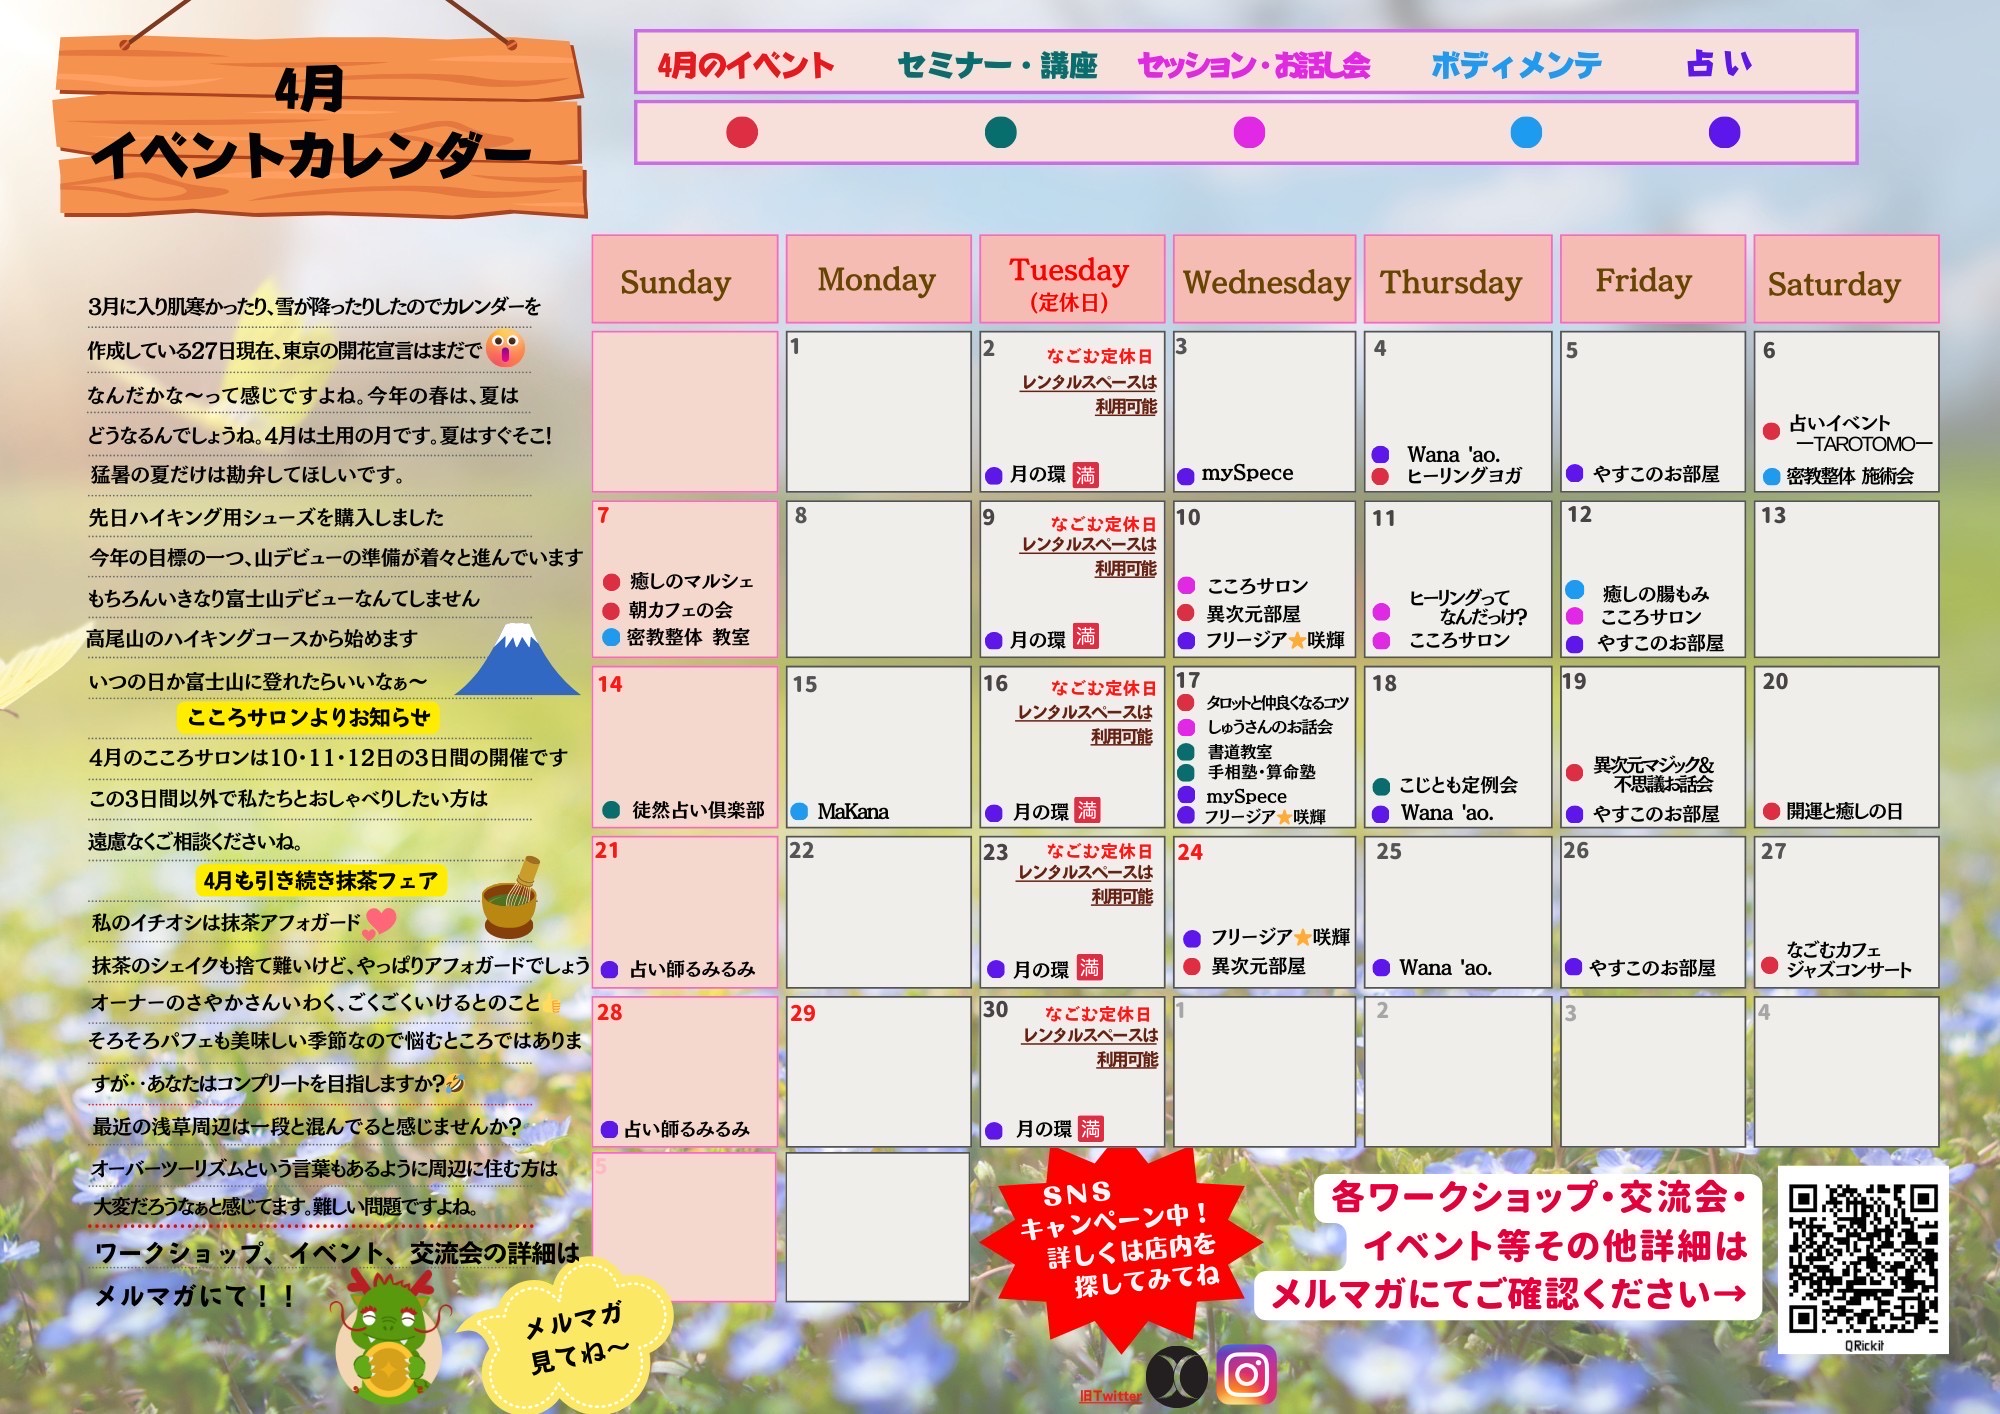 4月なごむカフェ イベントカレンダー